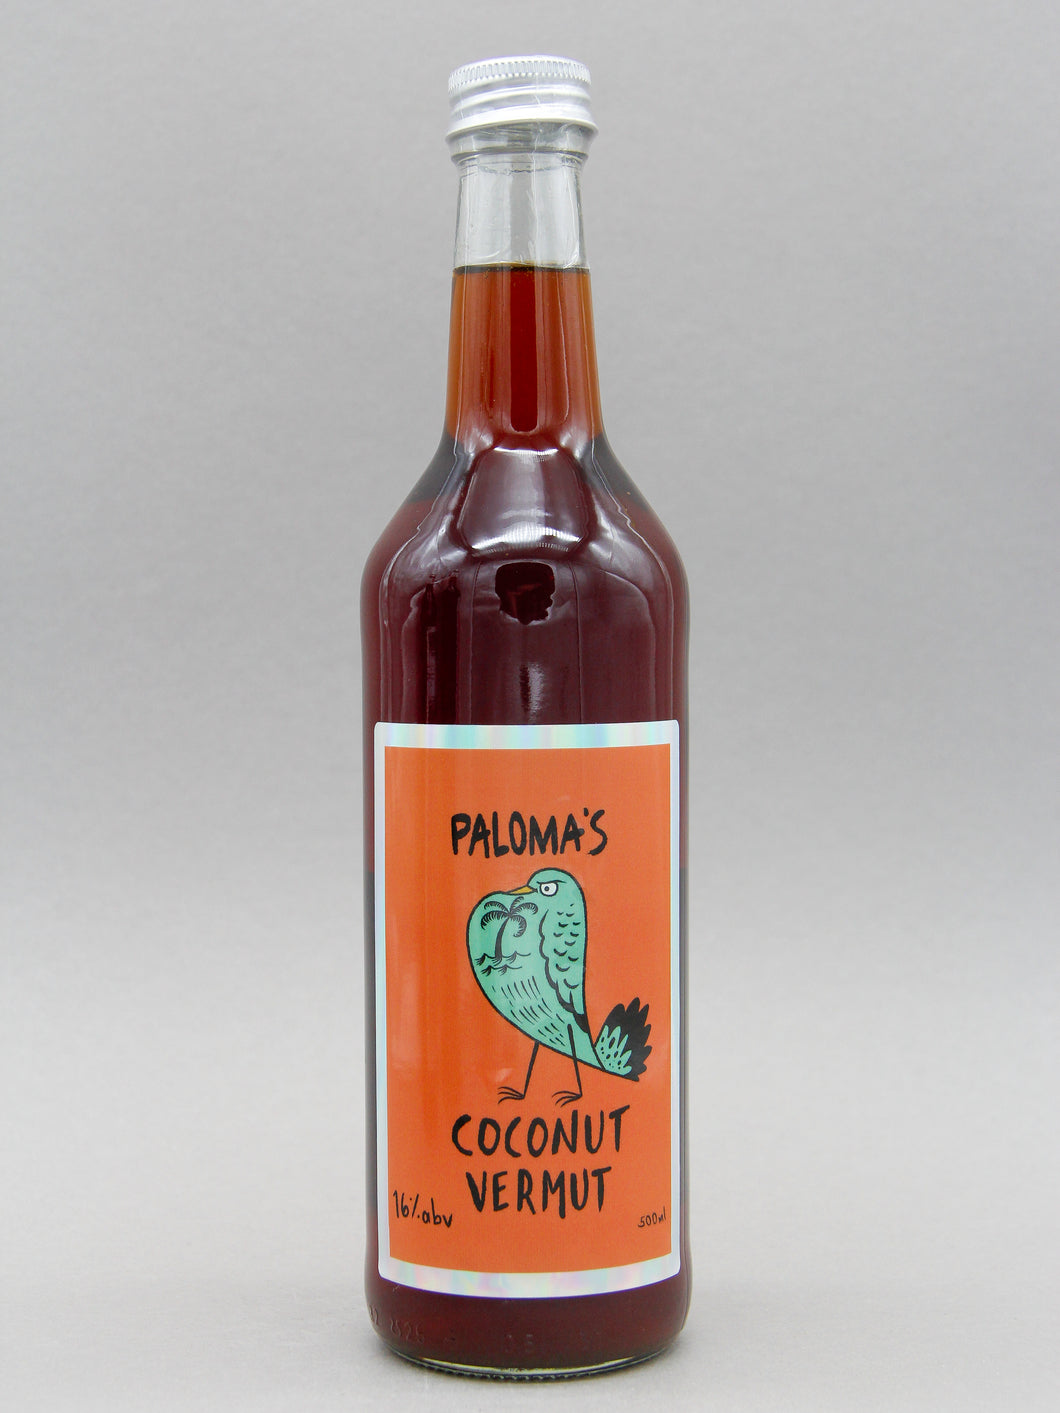 Paloma's Coconut Vermouth, Italy (16%, 50cl)